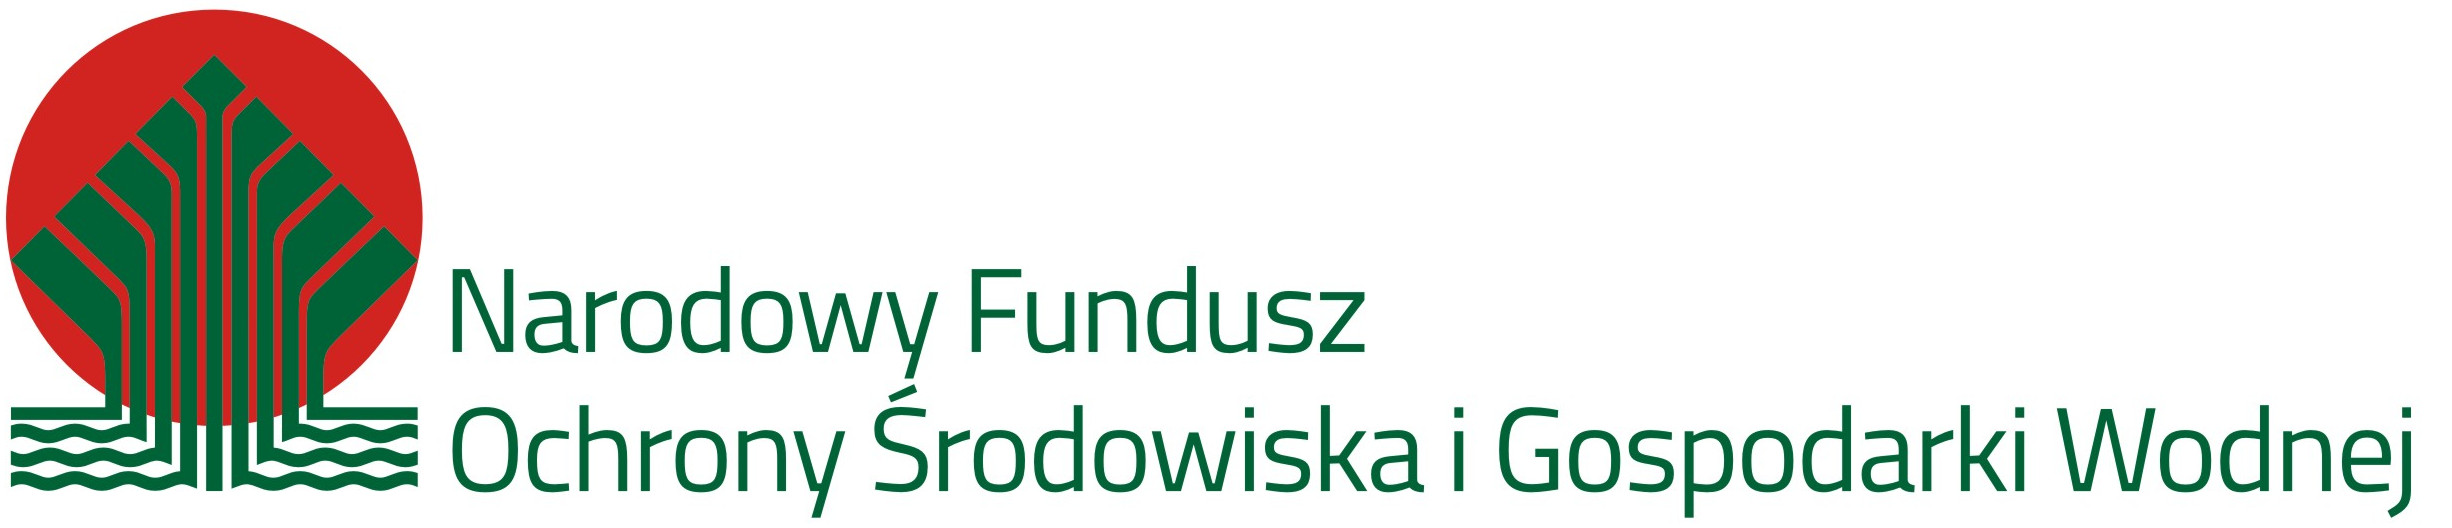 Logotyp Narodowy Fundusz Ochrony Środowiska i Gospodatki Wodnej